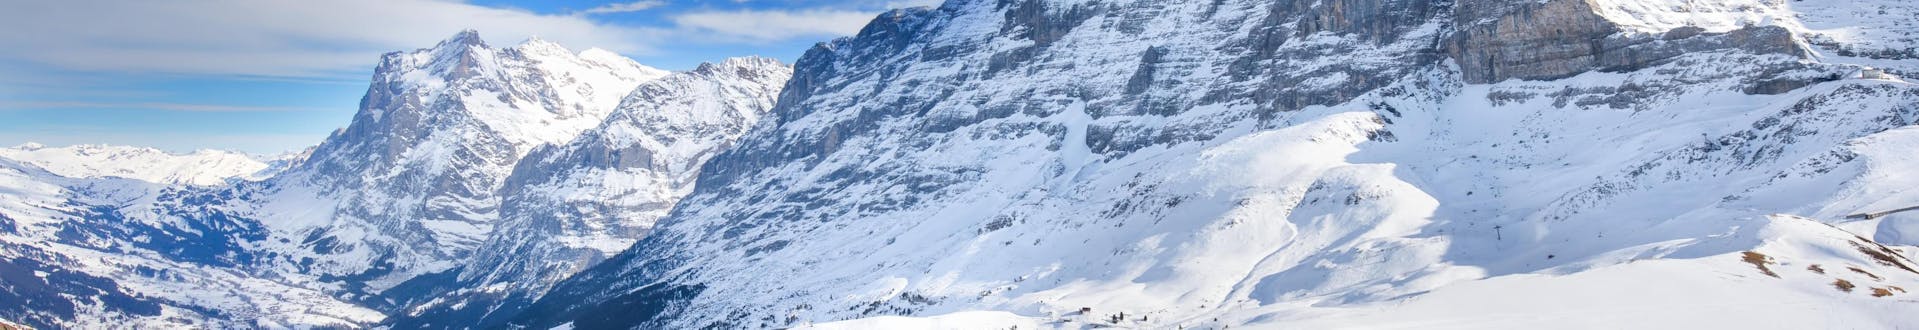 Vue sur les pistes enneigées de Wengen, dans la région de la Jungfrau, où de nombreuses écoles de ski proposent leurs cours de ski.